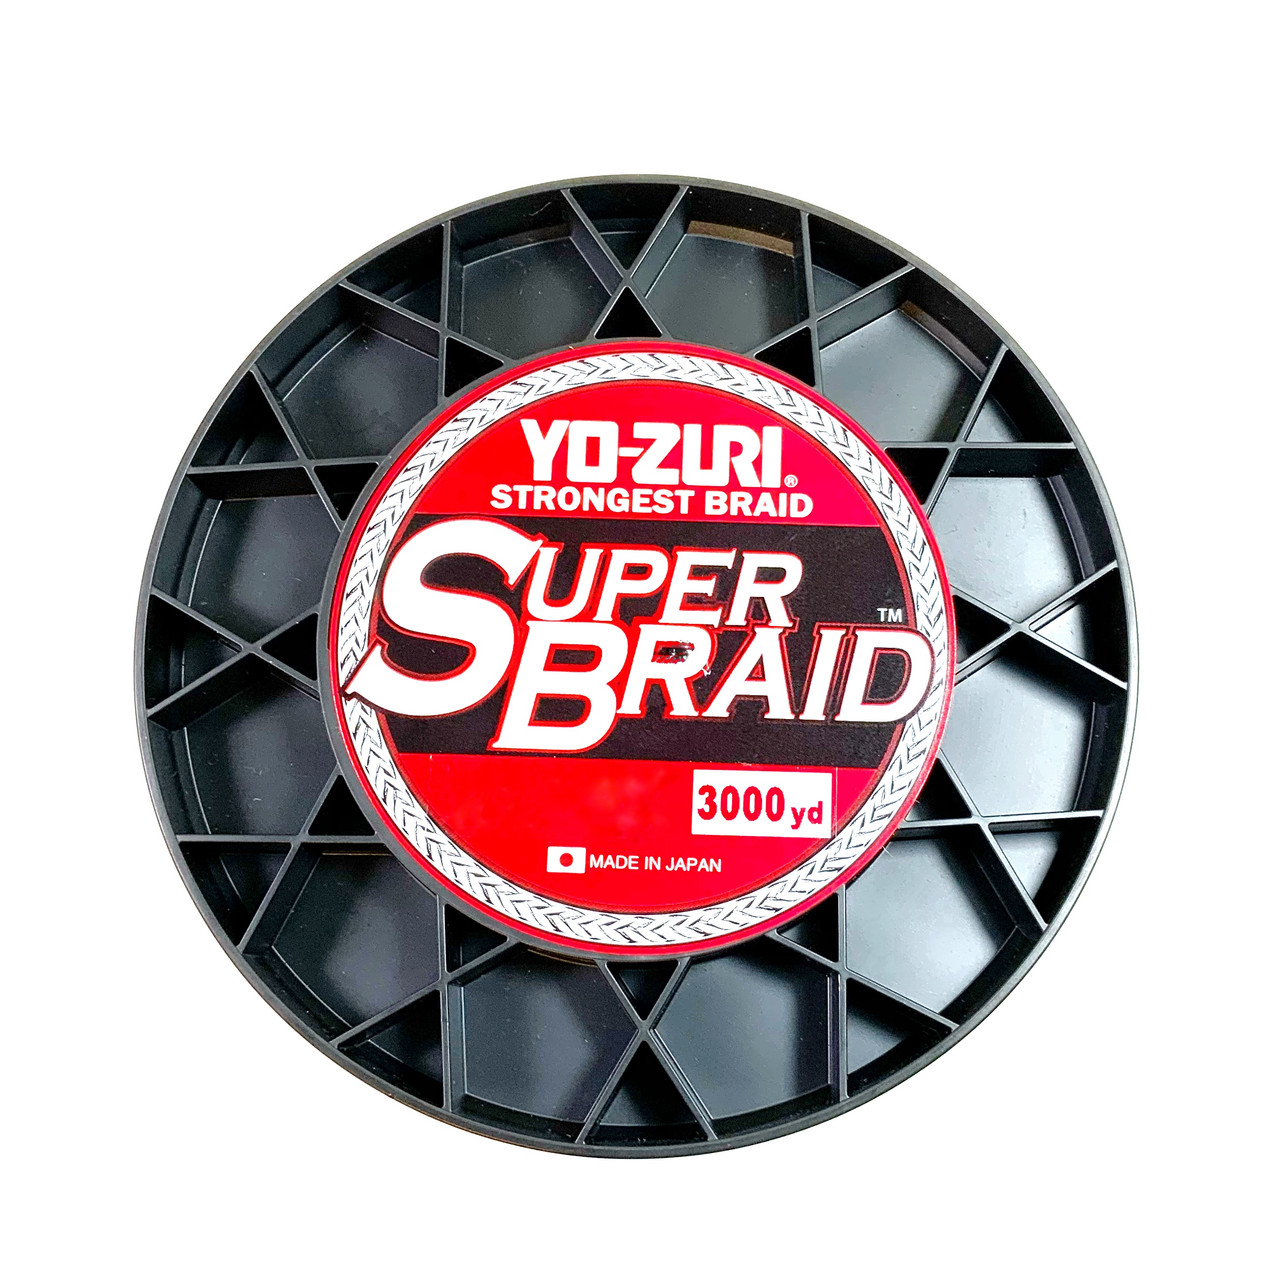 Yo-Zuri Super Braid 5 Color 330 YD Spool